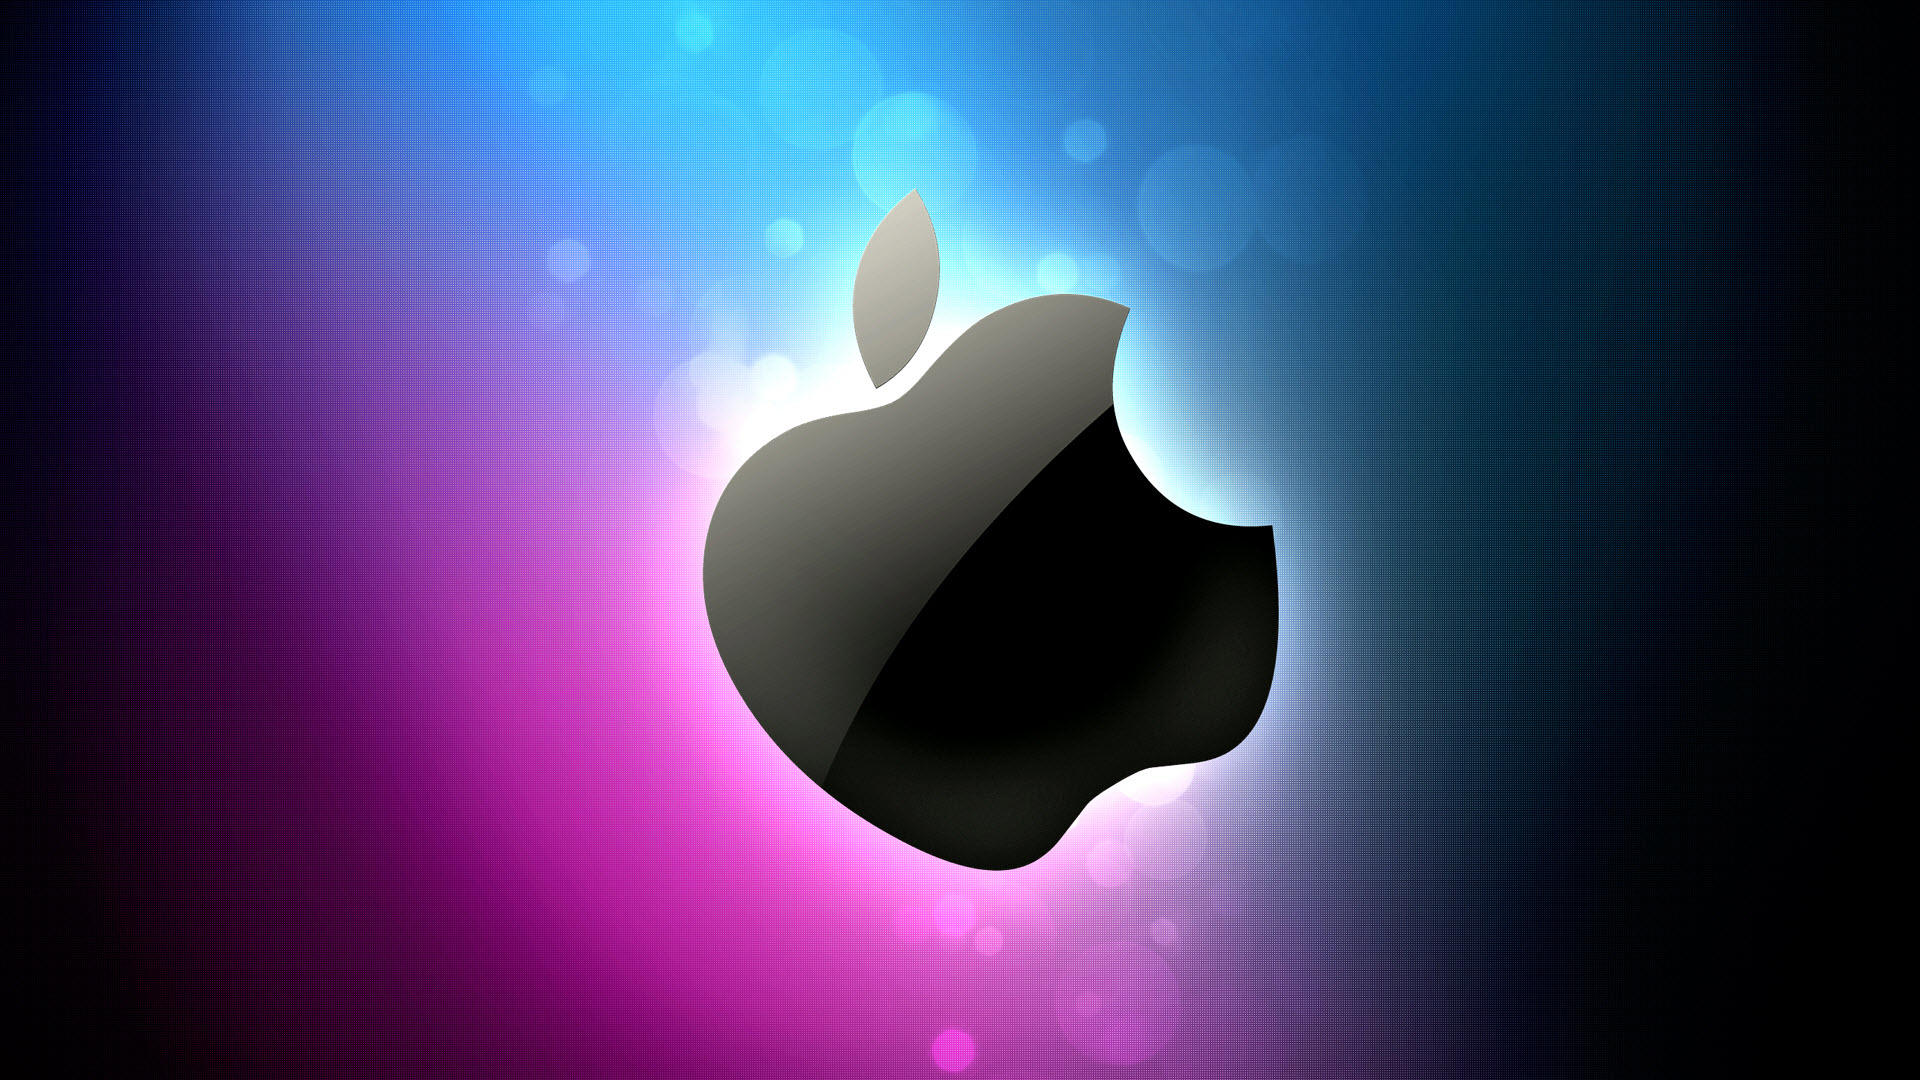 Great Apple Wallpaper Hd - Apple Logo Wallpaper Hd 1080p - HD Wallpaper 